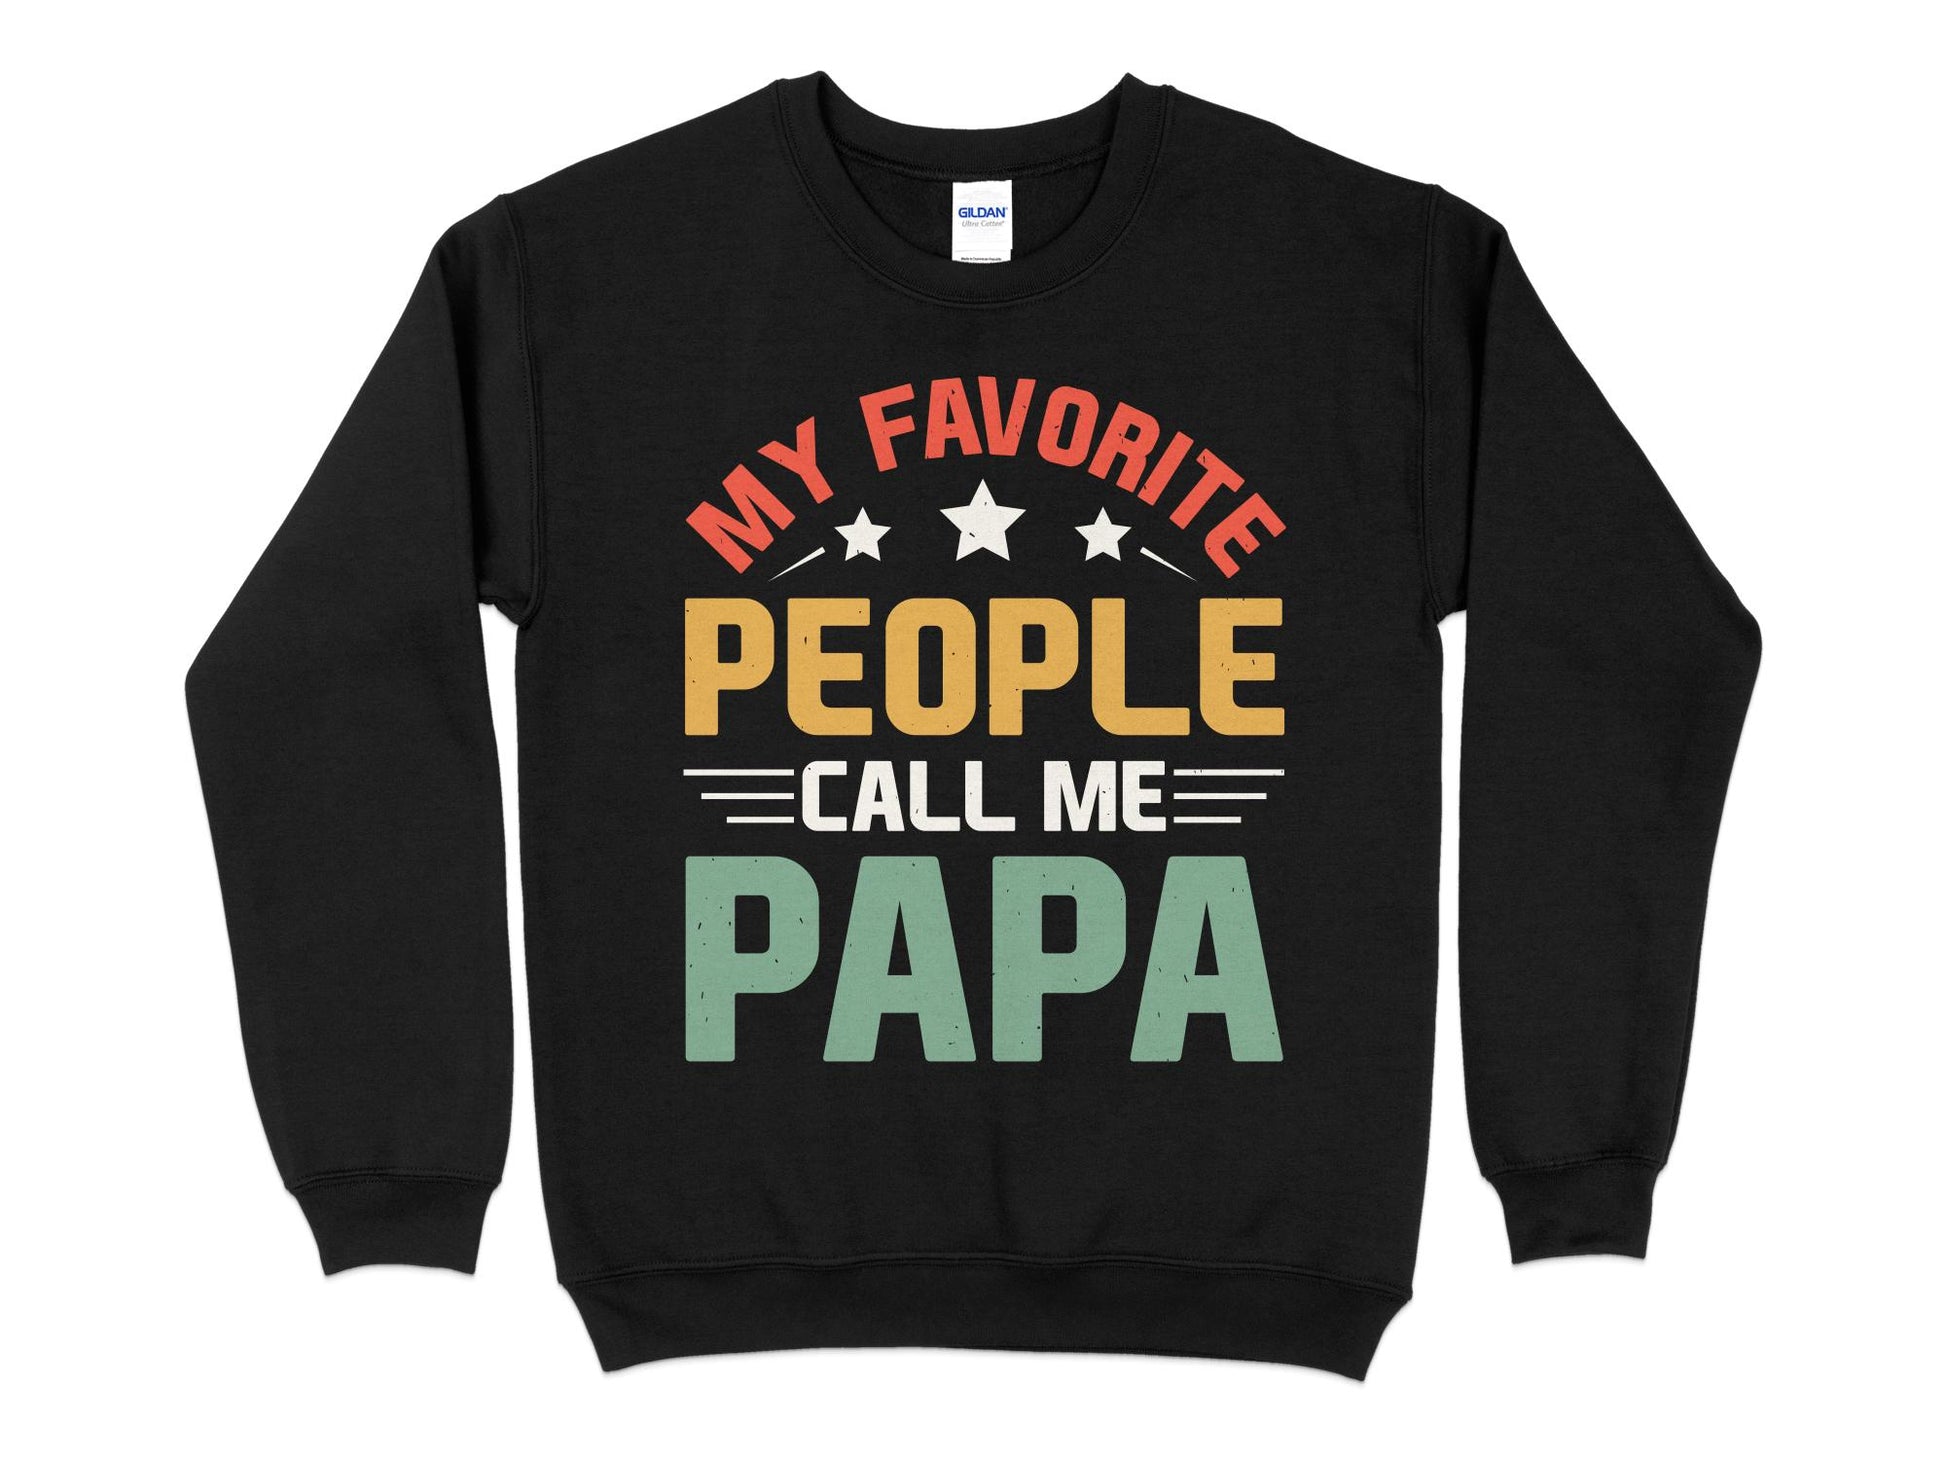 My Favorite People Call Me Papa Sweatshirt, black